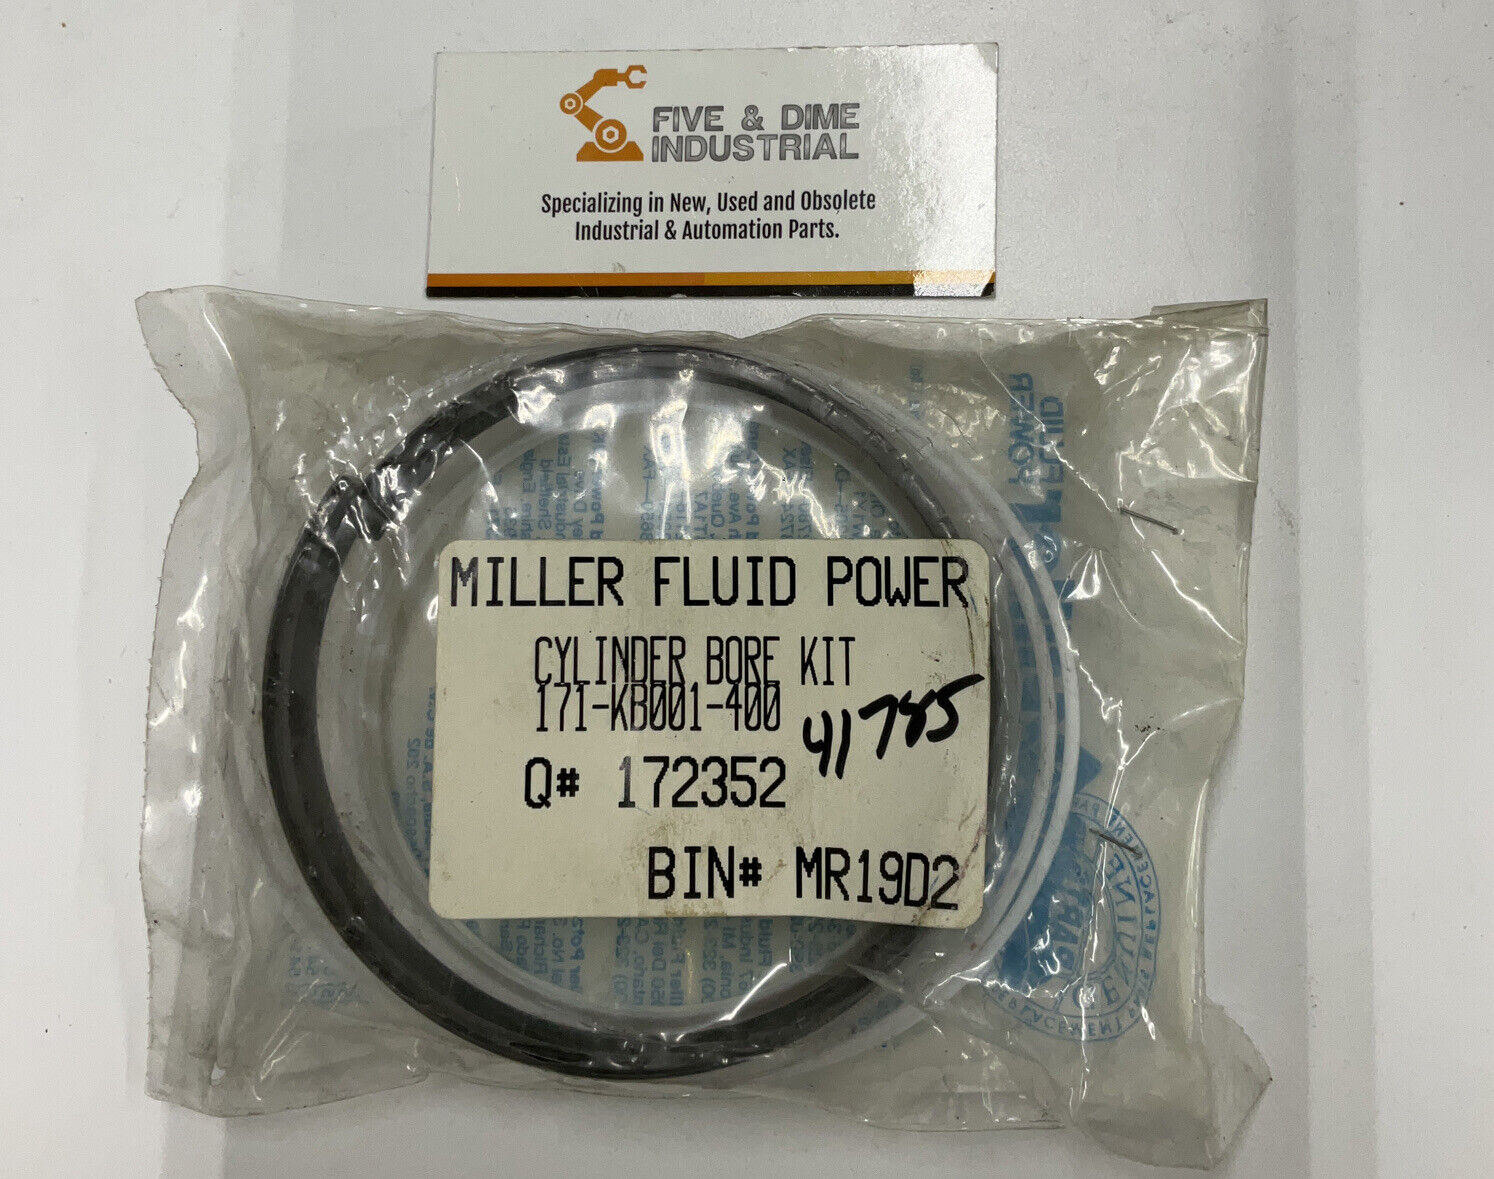 Miller 171-KB001-400  Fluid Power Cylinder Bore Kit (GR173) - 0